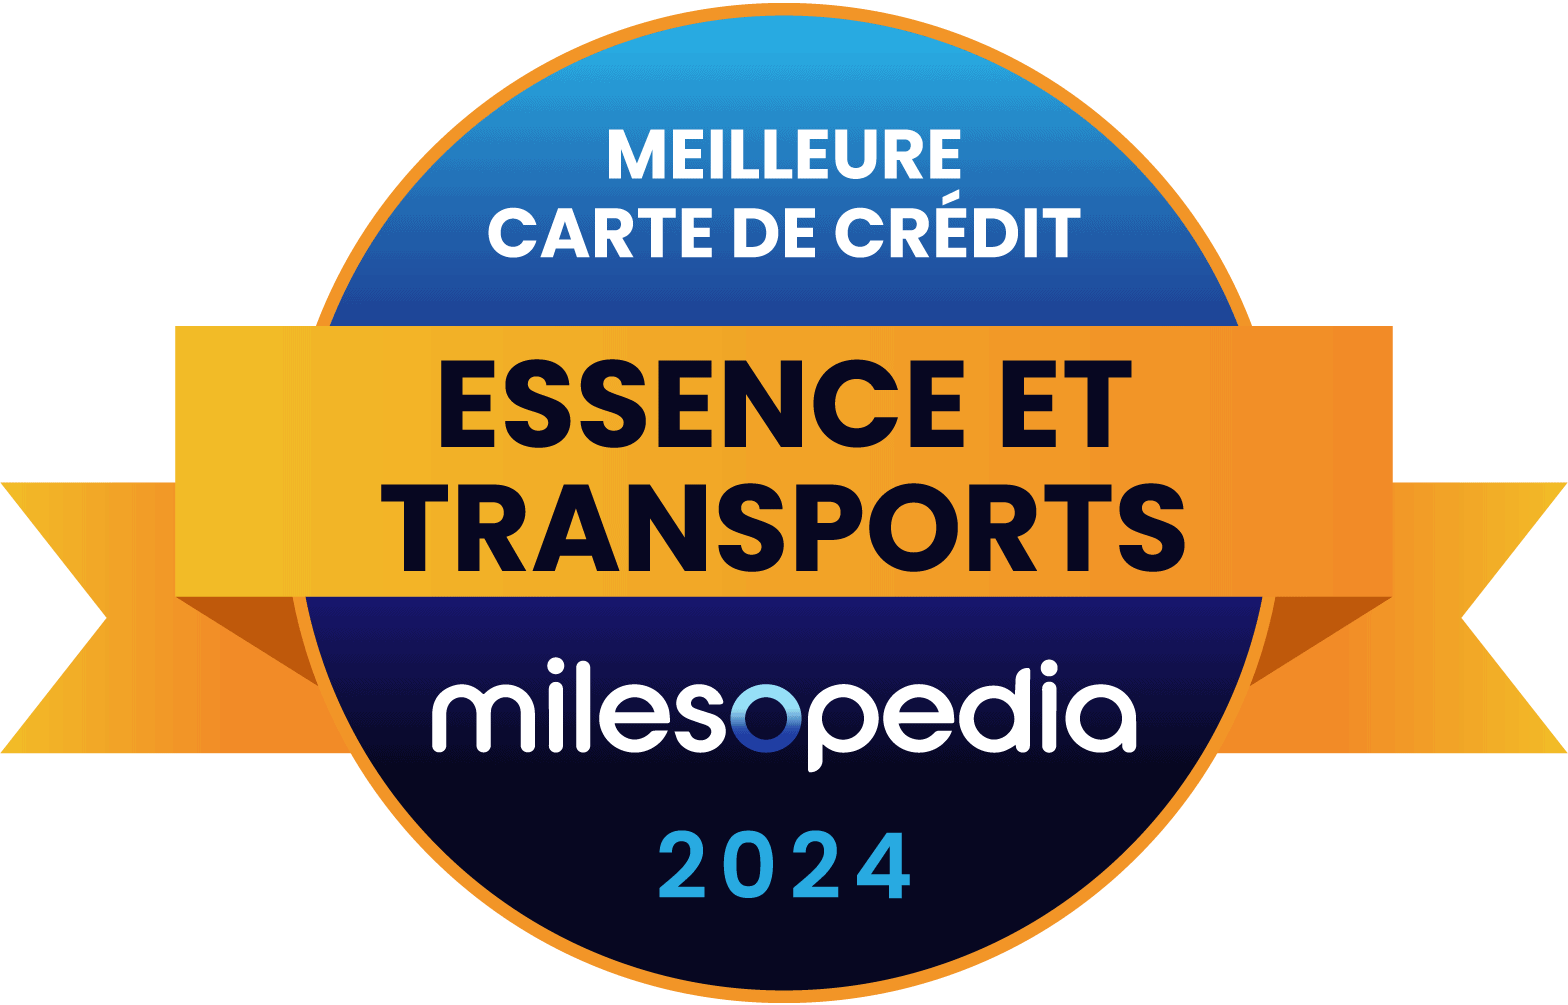 EssenceTransports MeilleureCarteDeCredit Milesopedia 2024